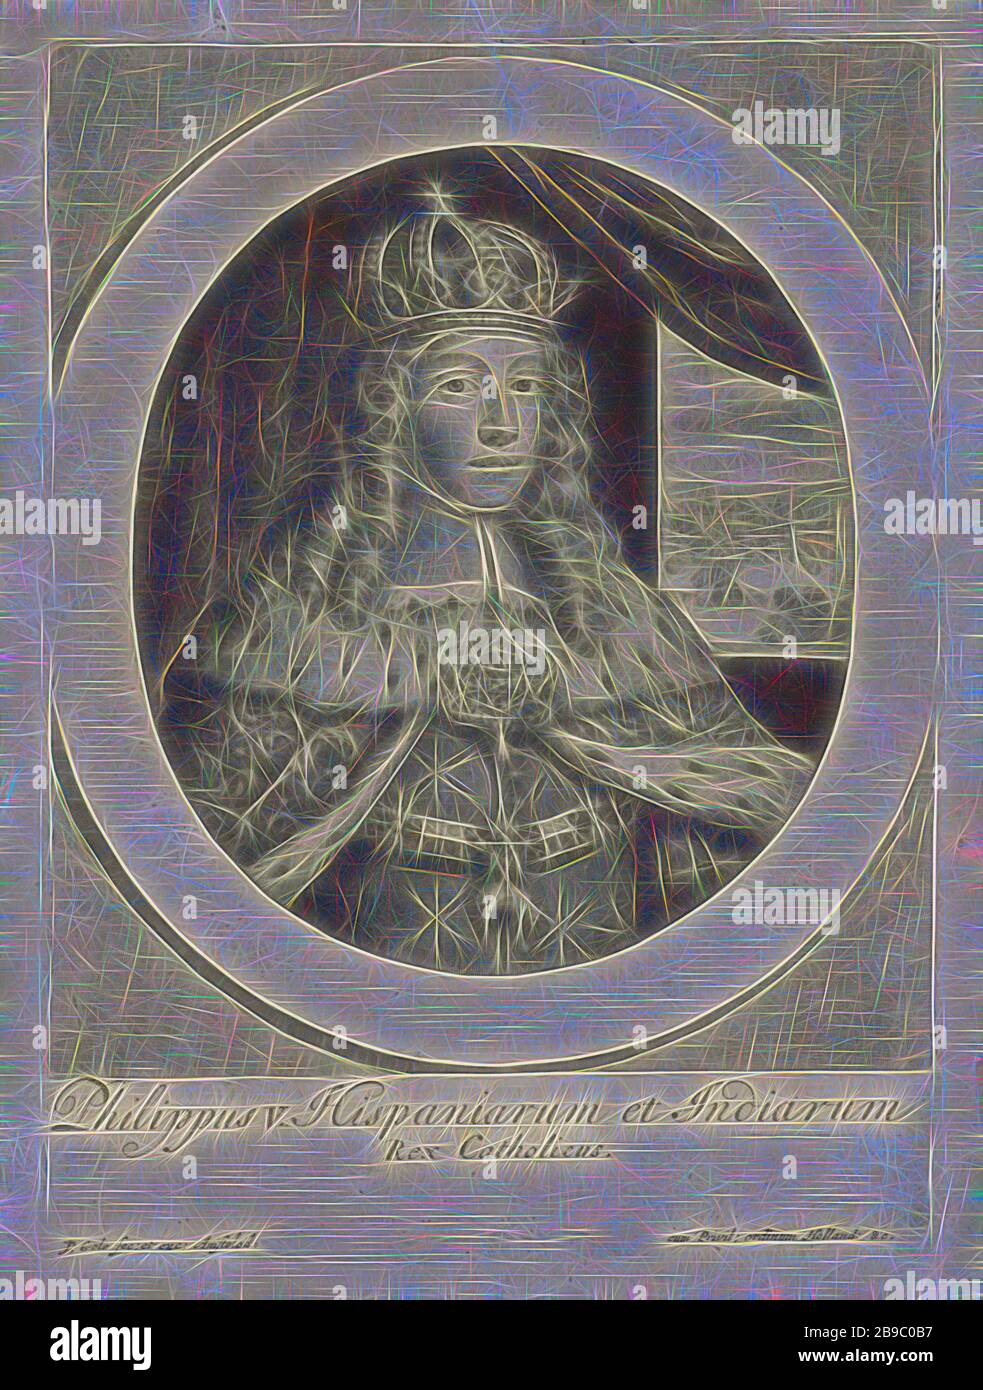 Portrait de Philippe V, roi d'Espagne, le jeune duc Philippe d'Anjou, de 1700 roi Philippe V d'Espagne. Il porte une couronne, le manteau de couronnement et une chaîne avec le signe de l'ordre du polaire doré, ordre de chevalier du polaire doré, couronne (symbole de souveraineté), manteau, robe, robe (symbole de souveraineté), Philippe V (roi d'Espagne), Jacob Gole (mentionné sur l'objet), Amsterdam, 1700 - 1724, papier, gravure, h 190 mm × W 139 mm, repensé par Gibon, design de glanissement chaleureux et joyeux de la luminosité et des rayons de lumière radiance. L'art classique réinventé avec une touche moderne. Photographie dans Banque D'Images